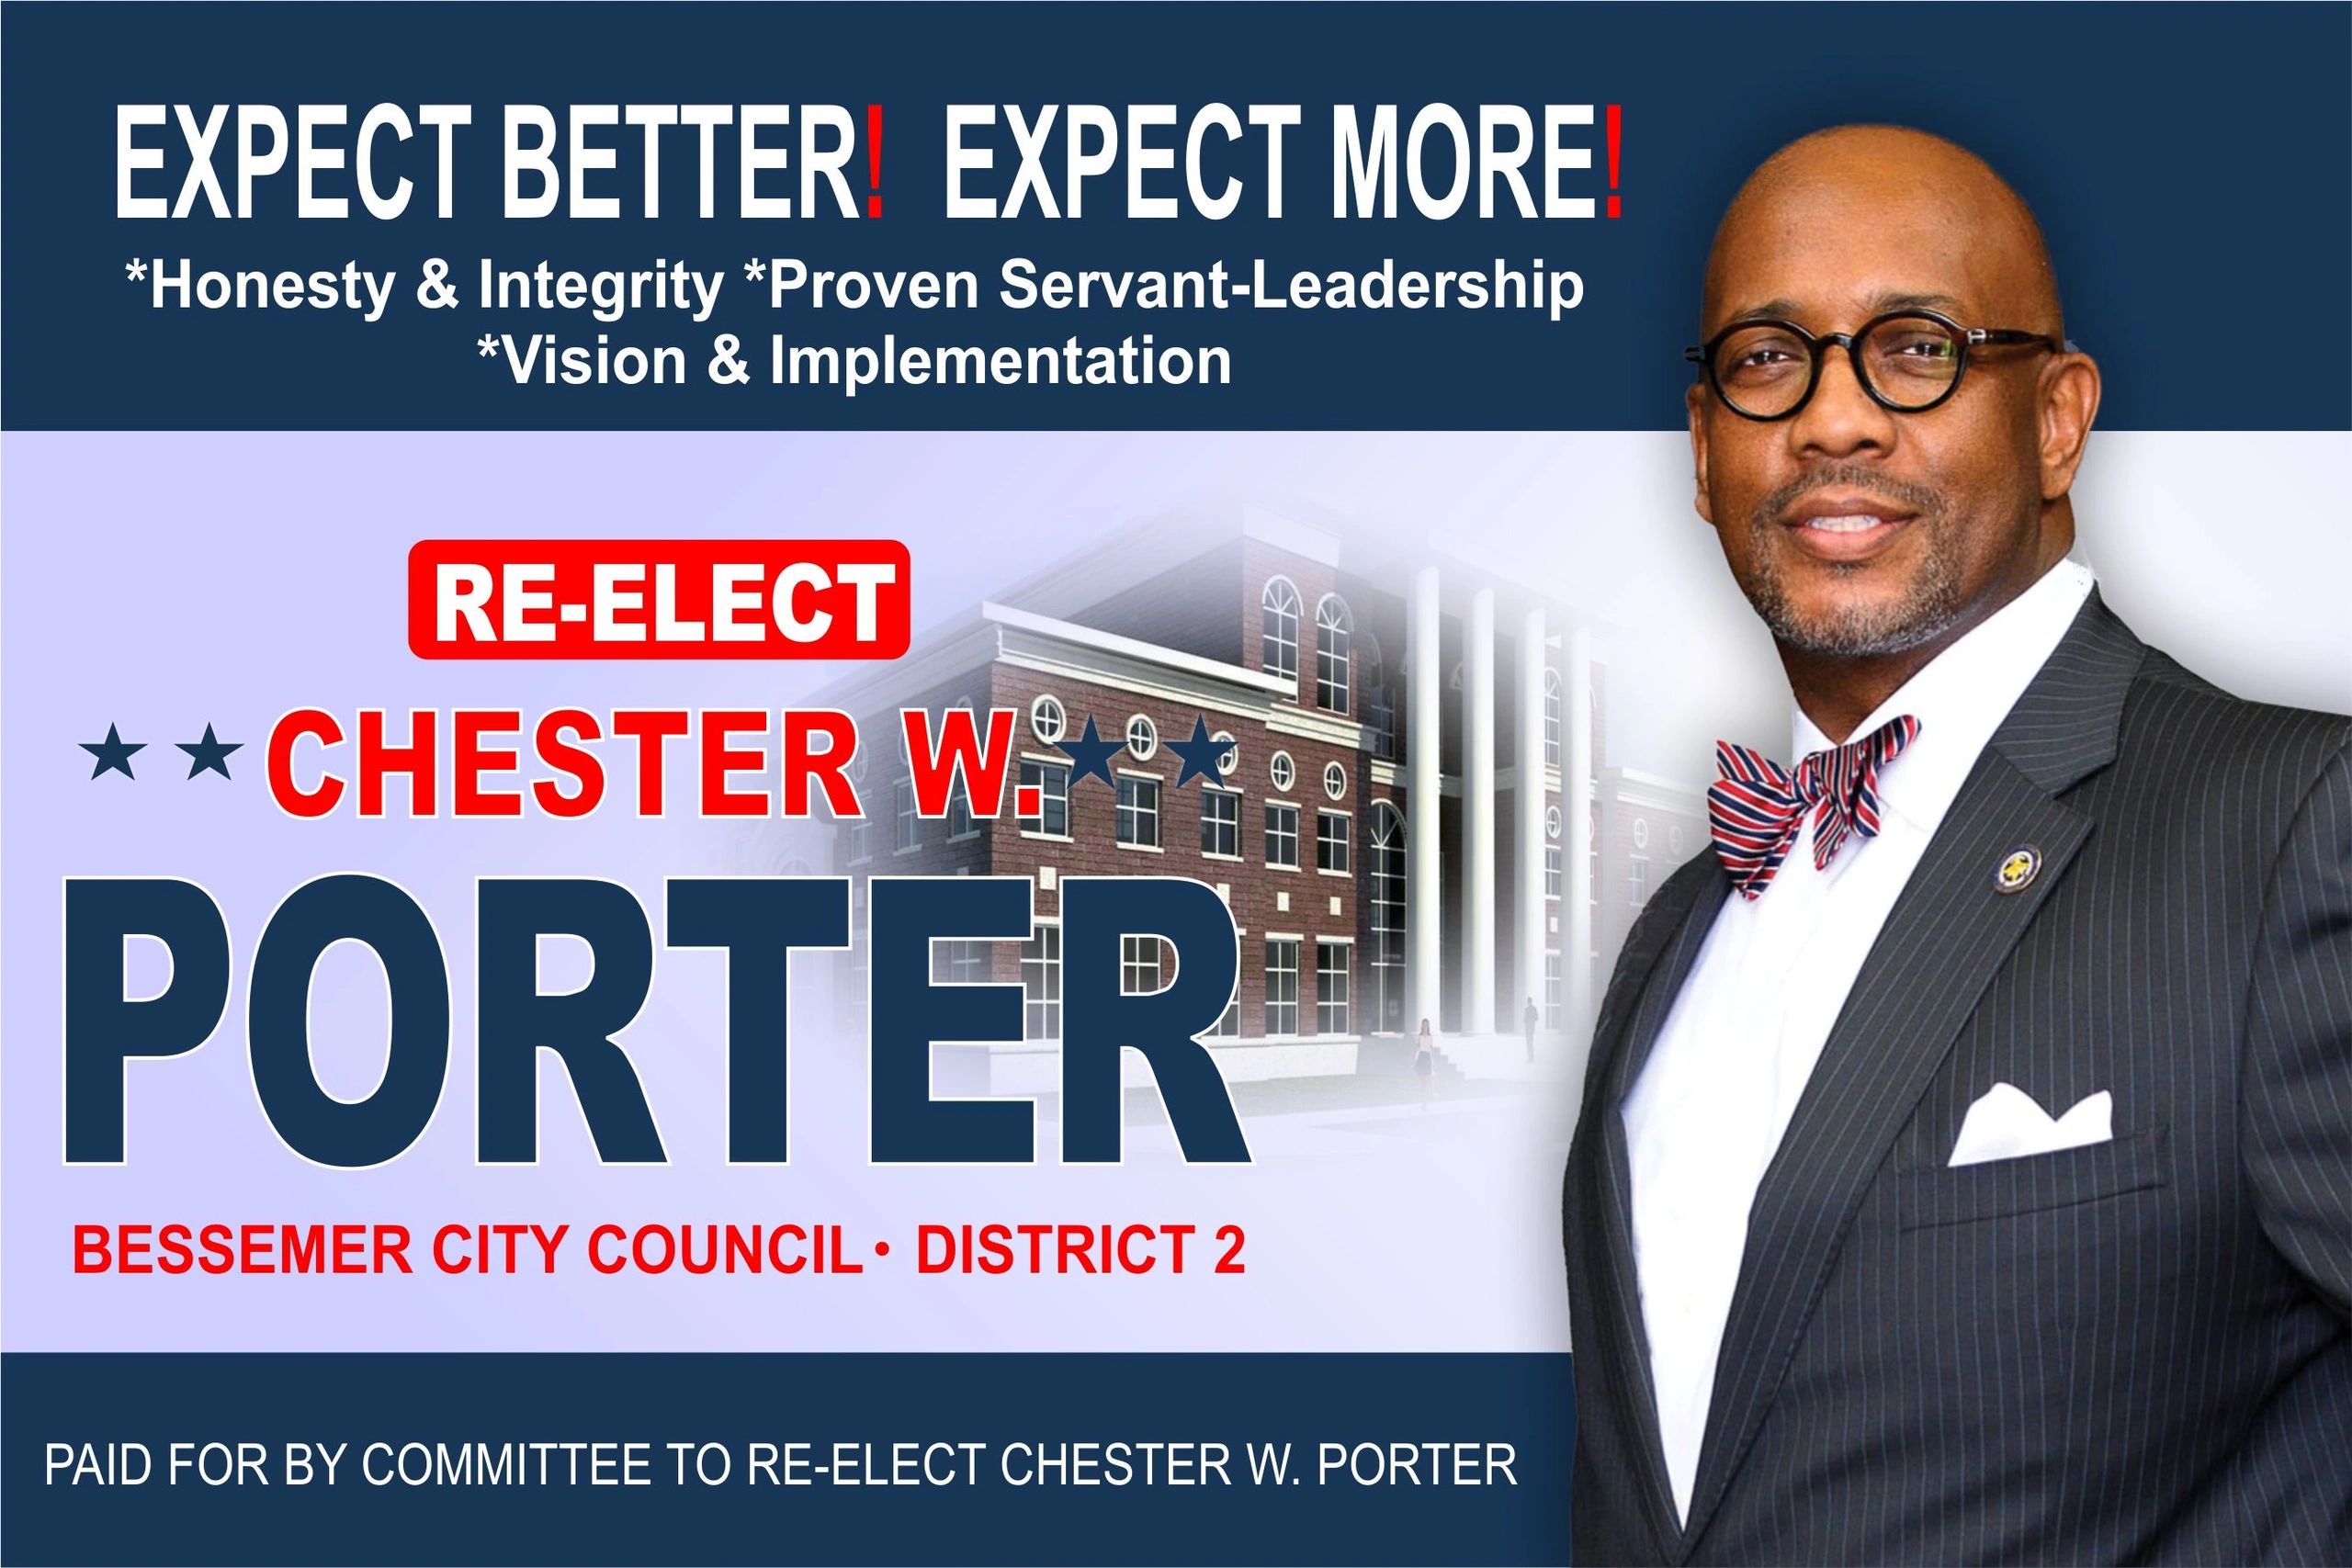 Vote Chester W. Porter